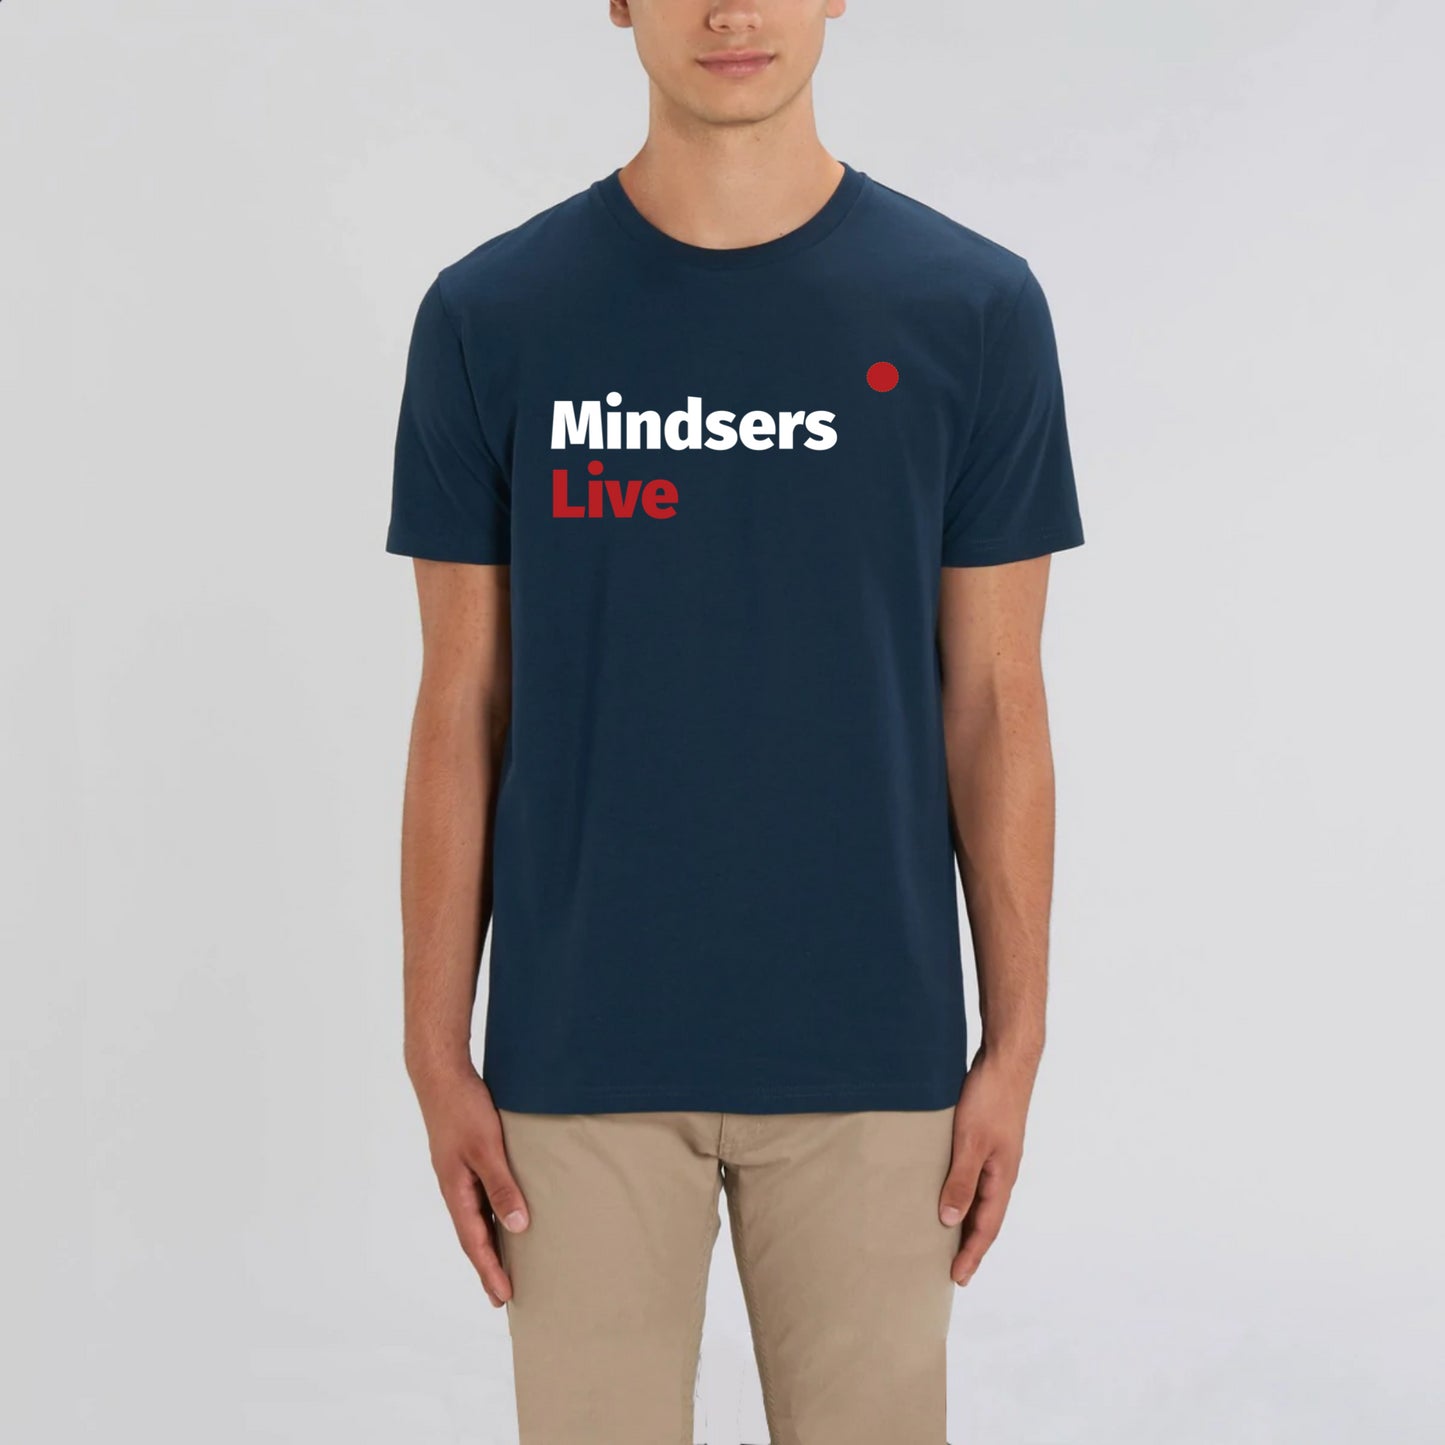 Mindsers Live – t-shirt, unisexe, bio